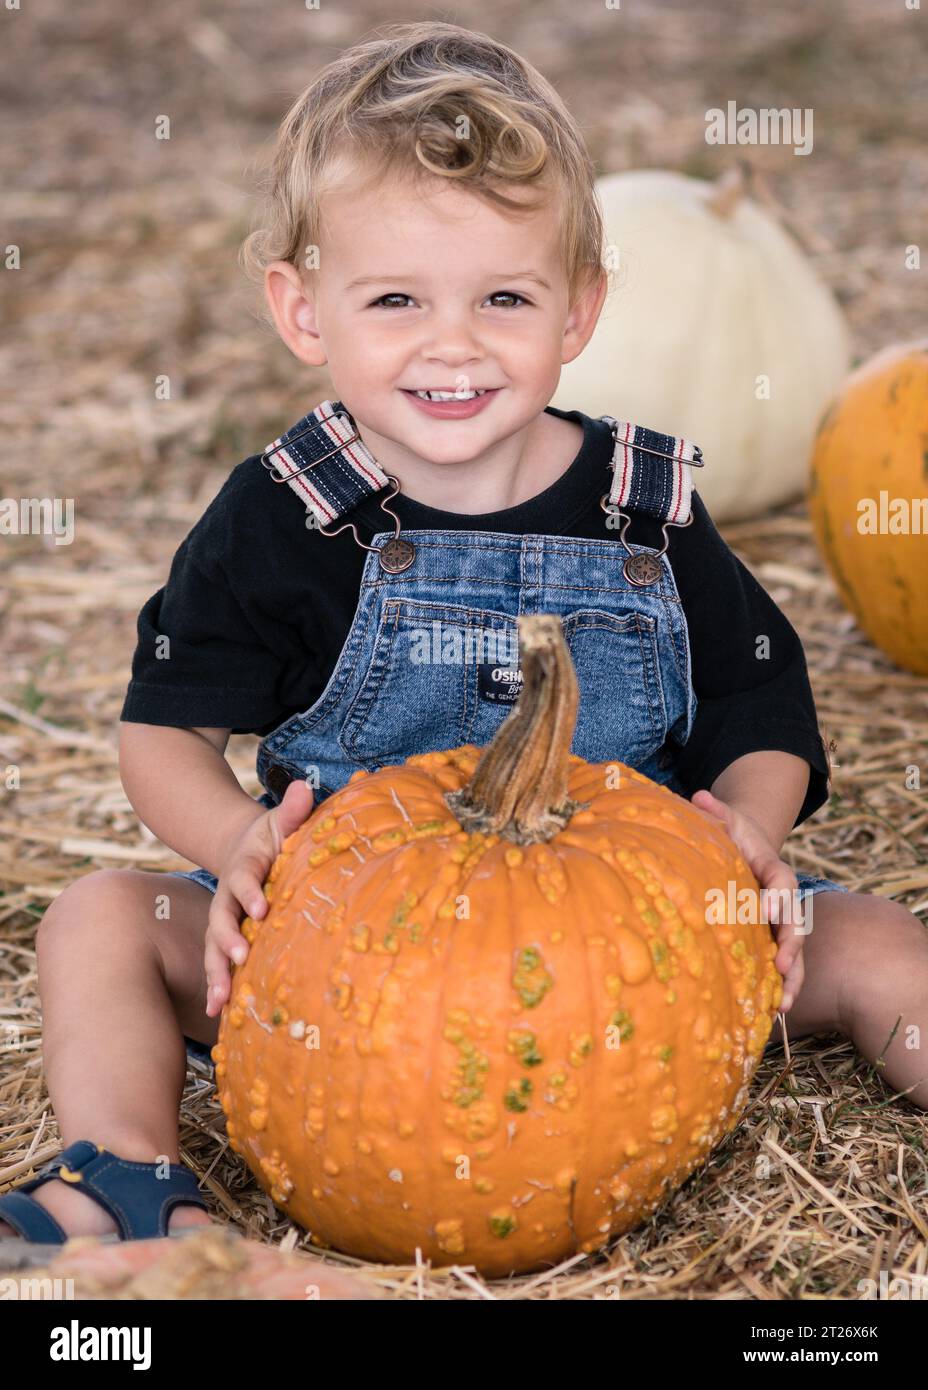 Porträt eines 2-jährigen Jungen, der lächelt und einen orangefarbenen Kürbis in der Hand hält, auf der Deluca Farm in San Pedro, CA. Stockfoto